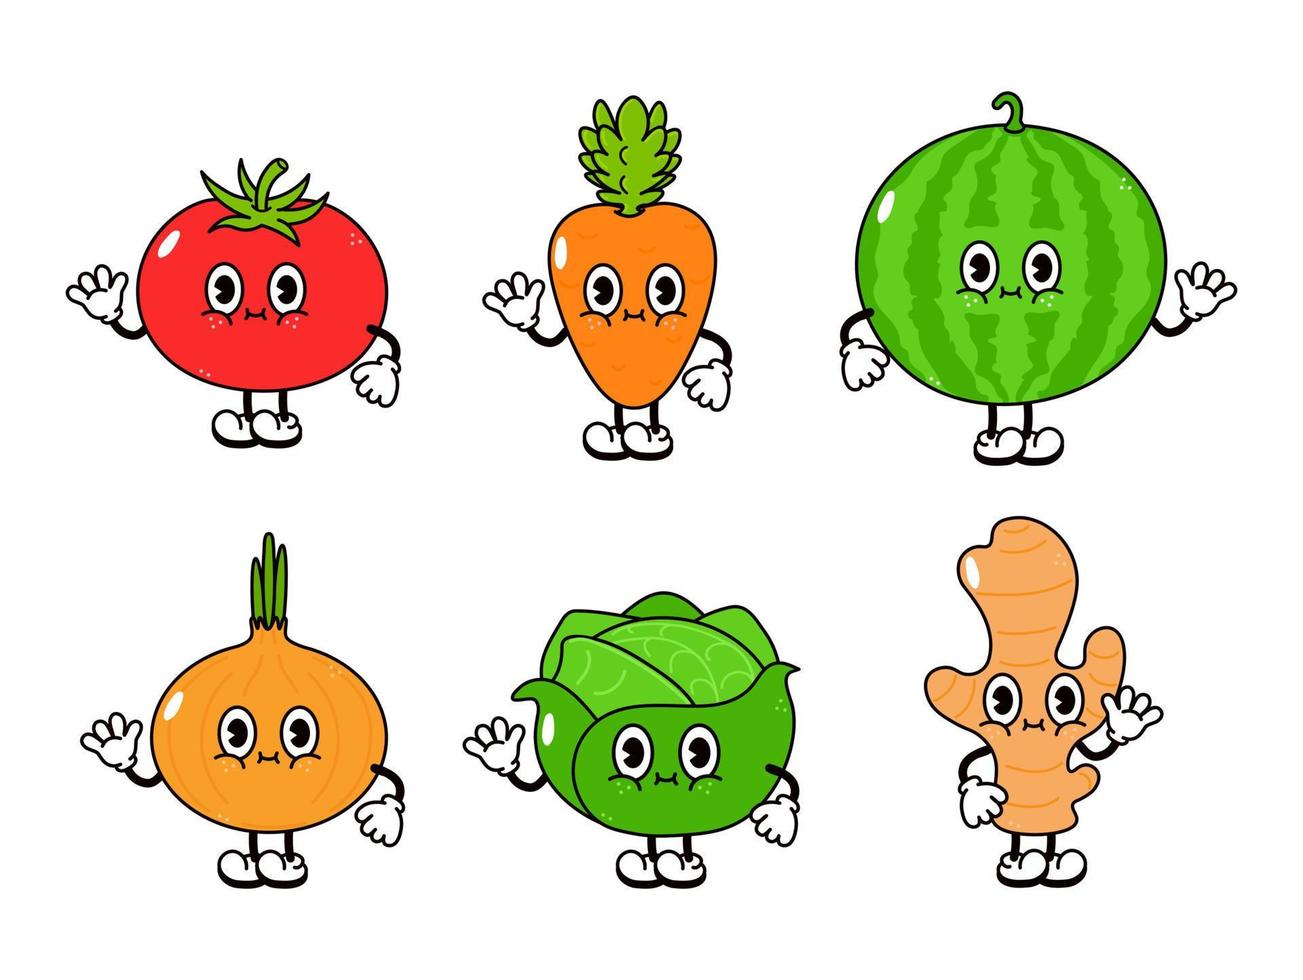 set di personaggi di verdure felici e carini divertenti. icona dell'illustrazione del carattere kawaii del fumetto disegnato a mano di vettore. isolato su sfondo bianco. pomodoro carino, anguria, cipolla, cavolo, zenzero, carota vettore